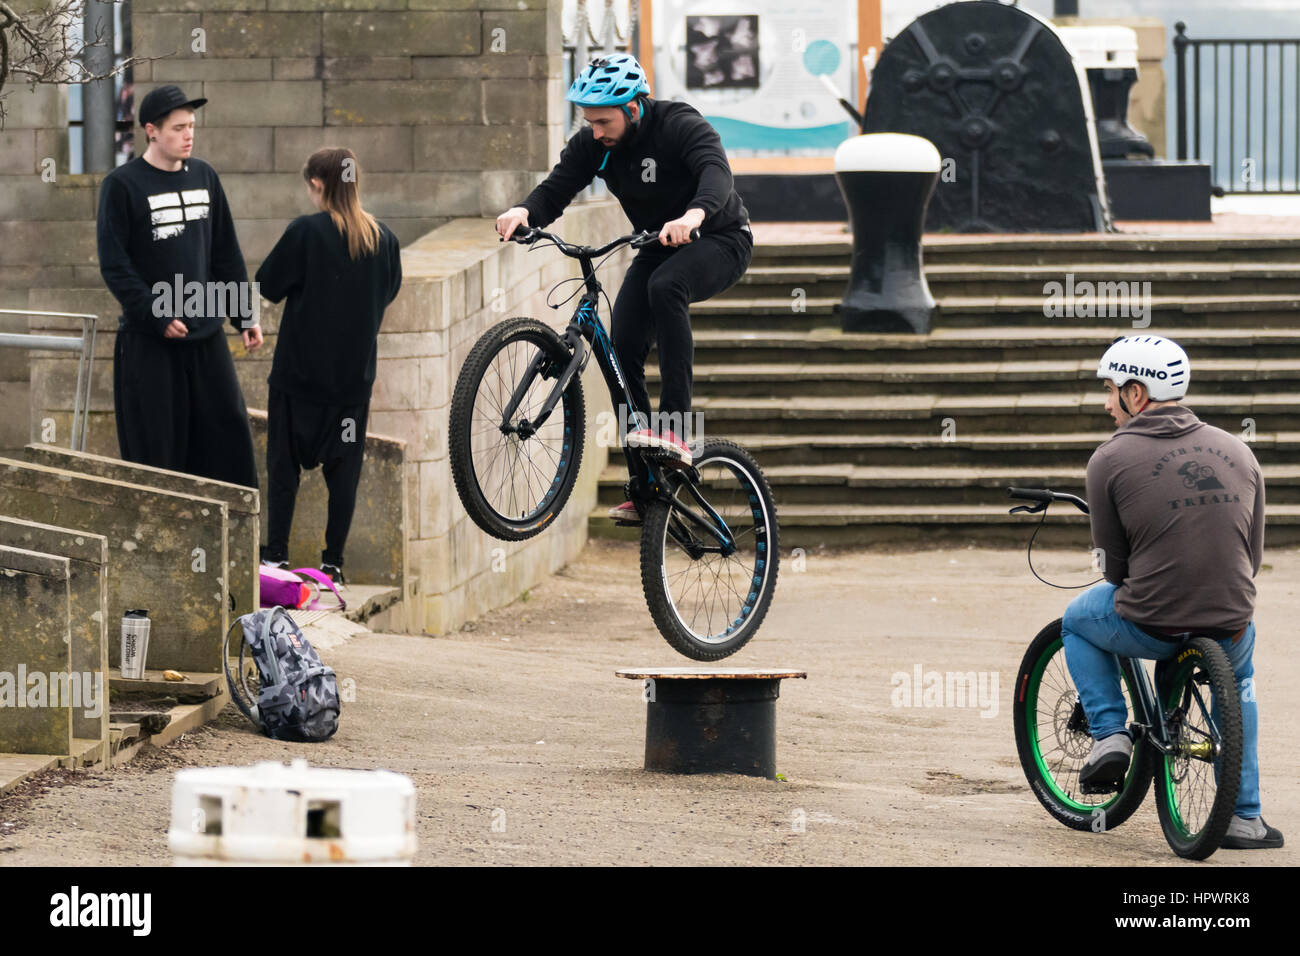 Cardiff, País de Gales, Reino Unido - 18 de febrero de 2017: Moto riders realizar trucos sobre el mobiliario urbano. Los hombres jóvenes realizar saltos para divertirte con tus amigos de pie alrededor Foto de stock